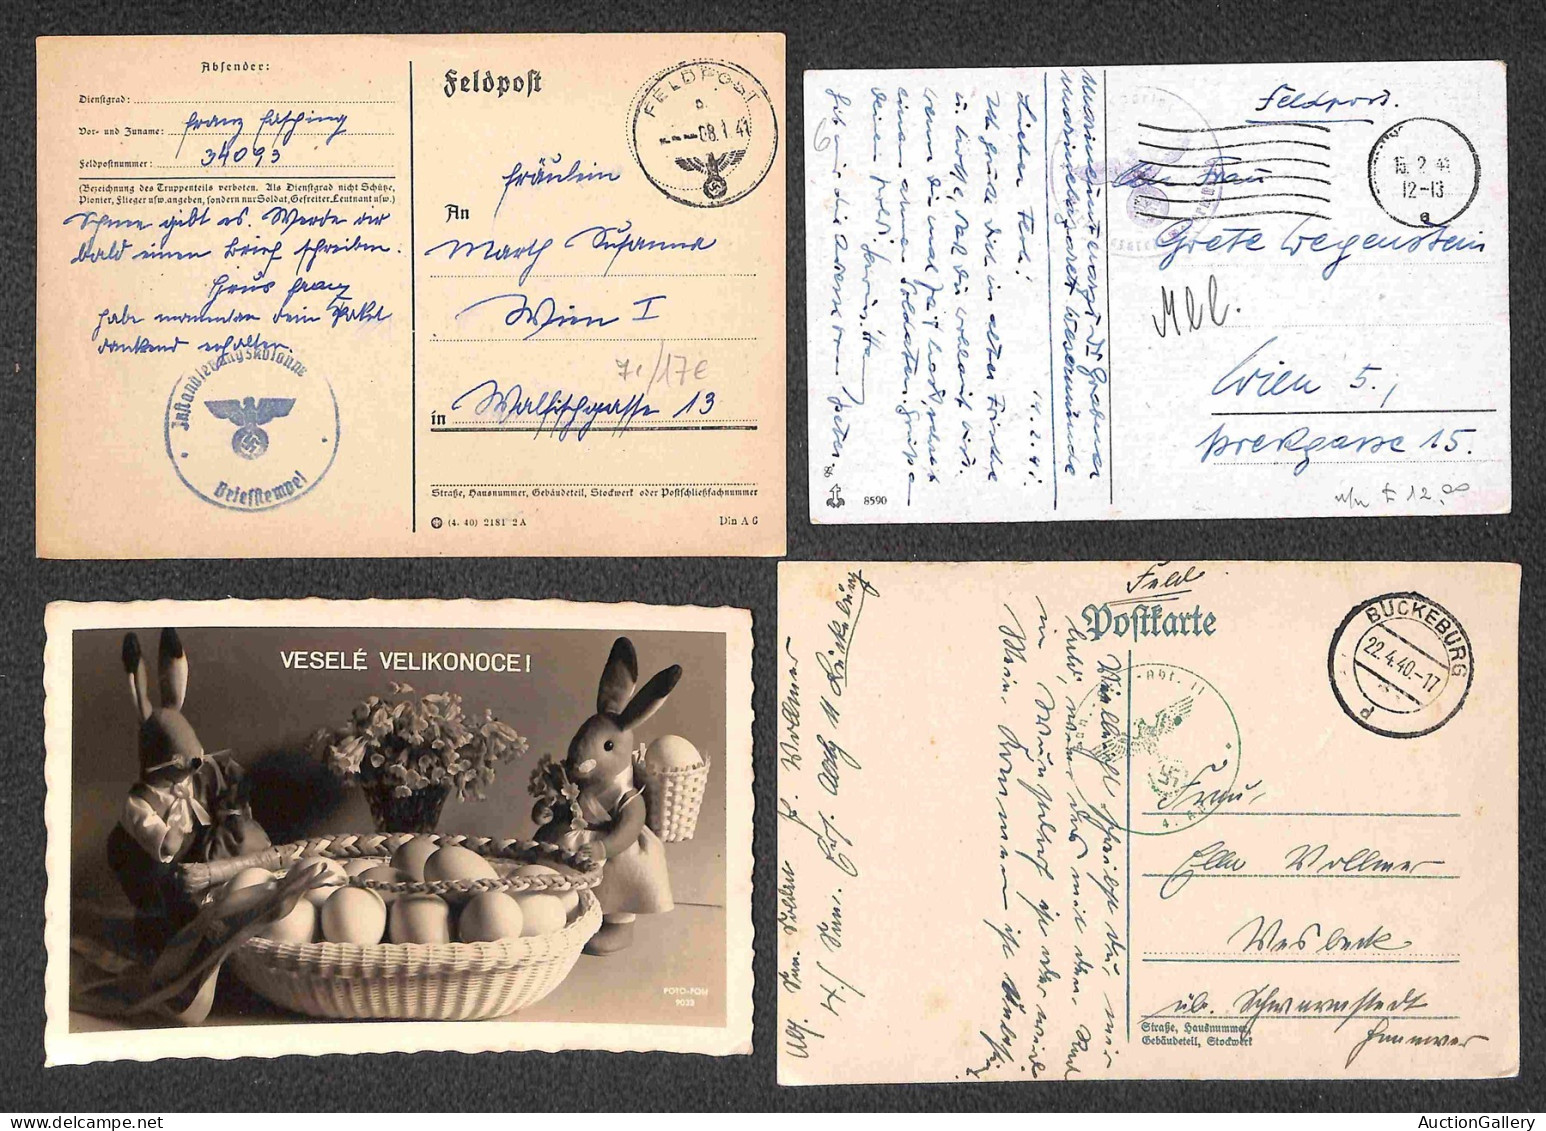 Europa - Germania - Feldpost - 1939/1944 - Ventidue cartoline in franchigia del periodo